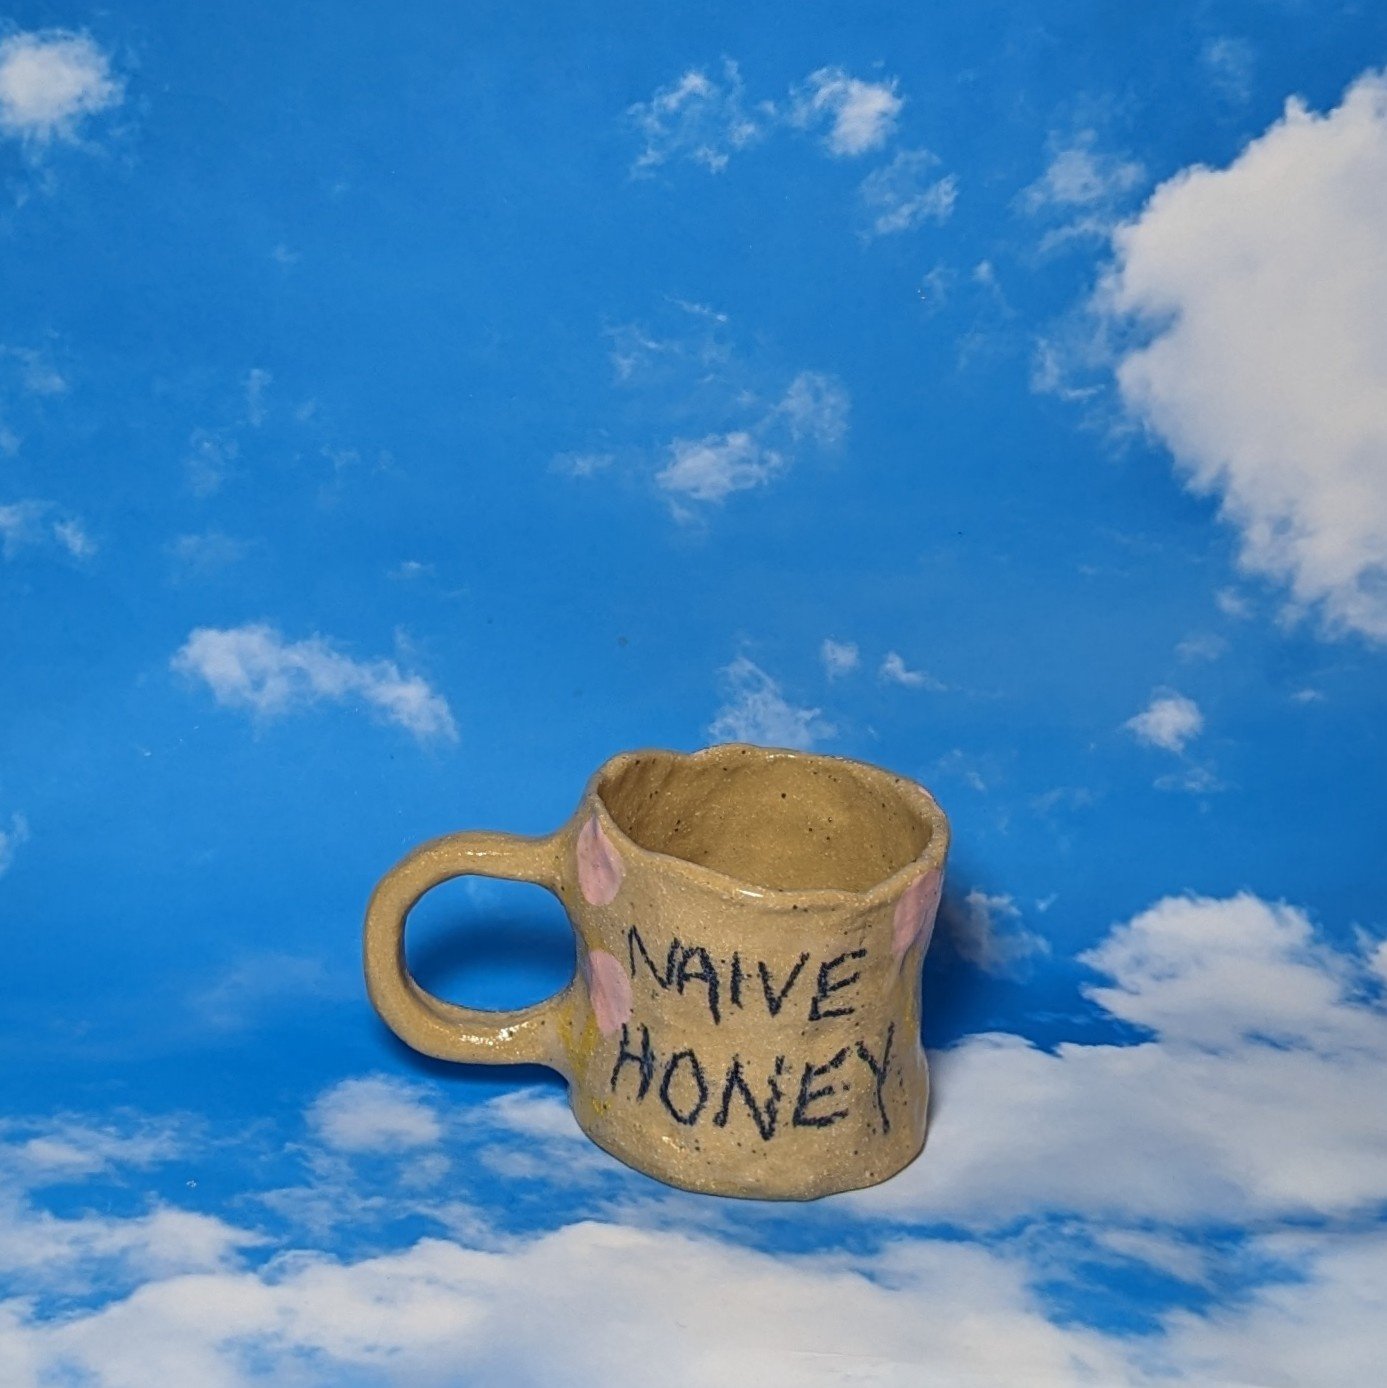 Image of naive honey mug